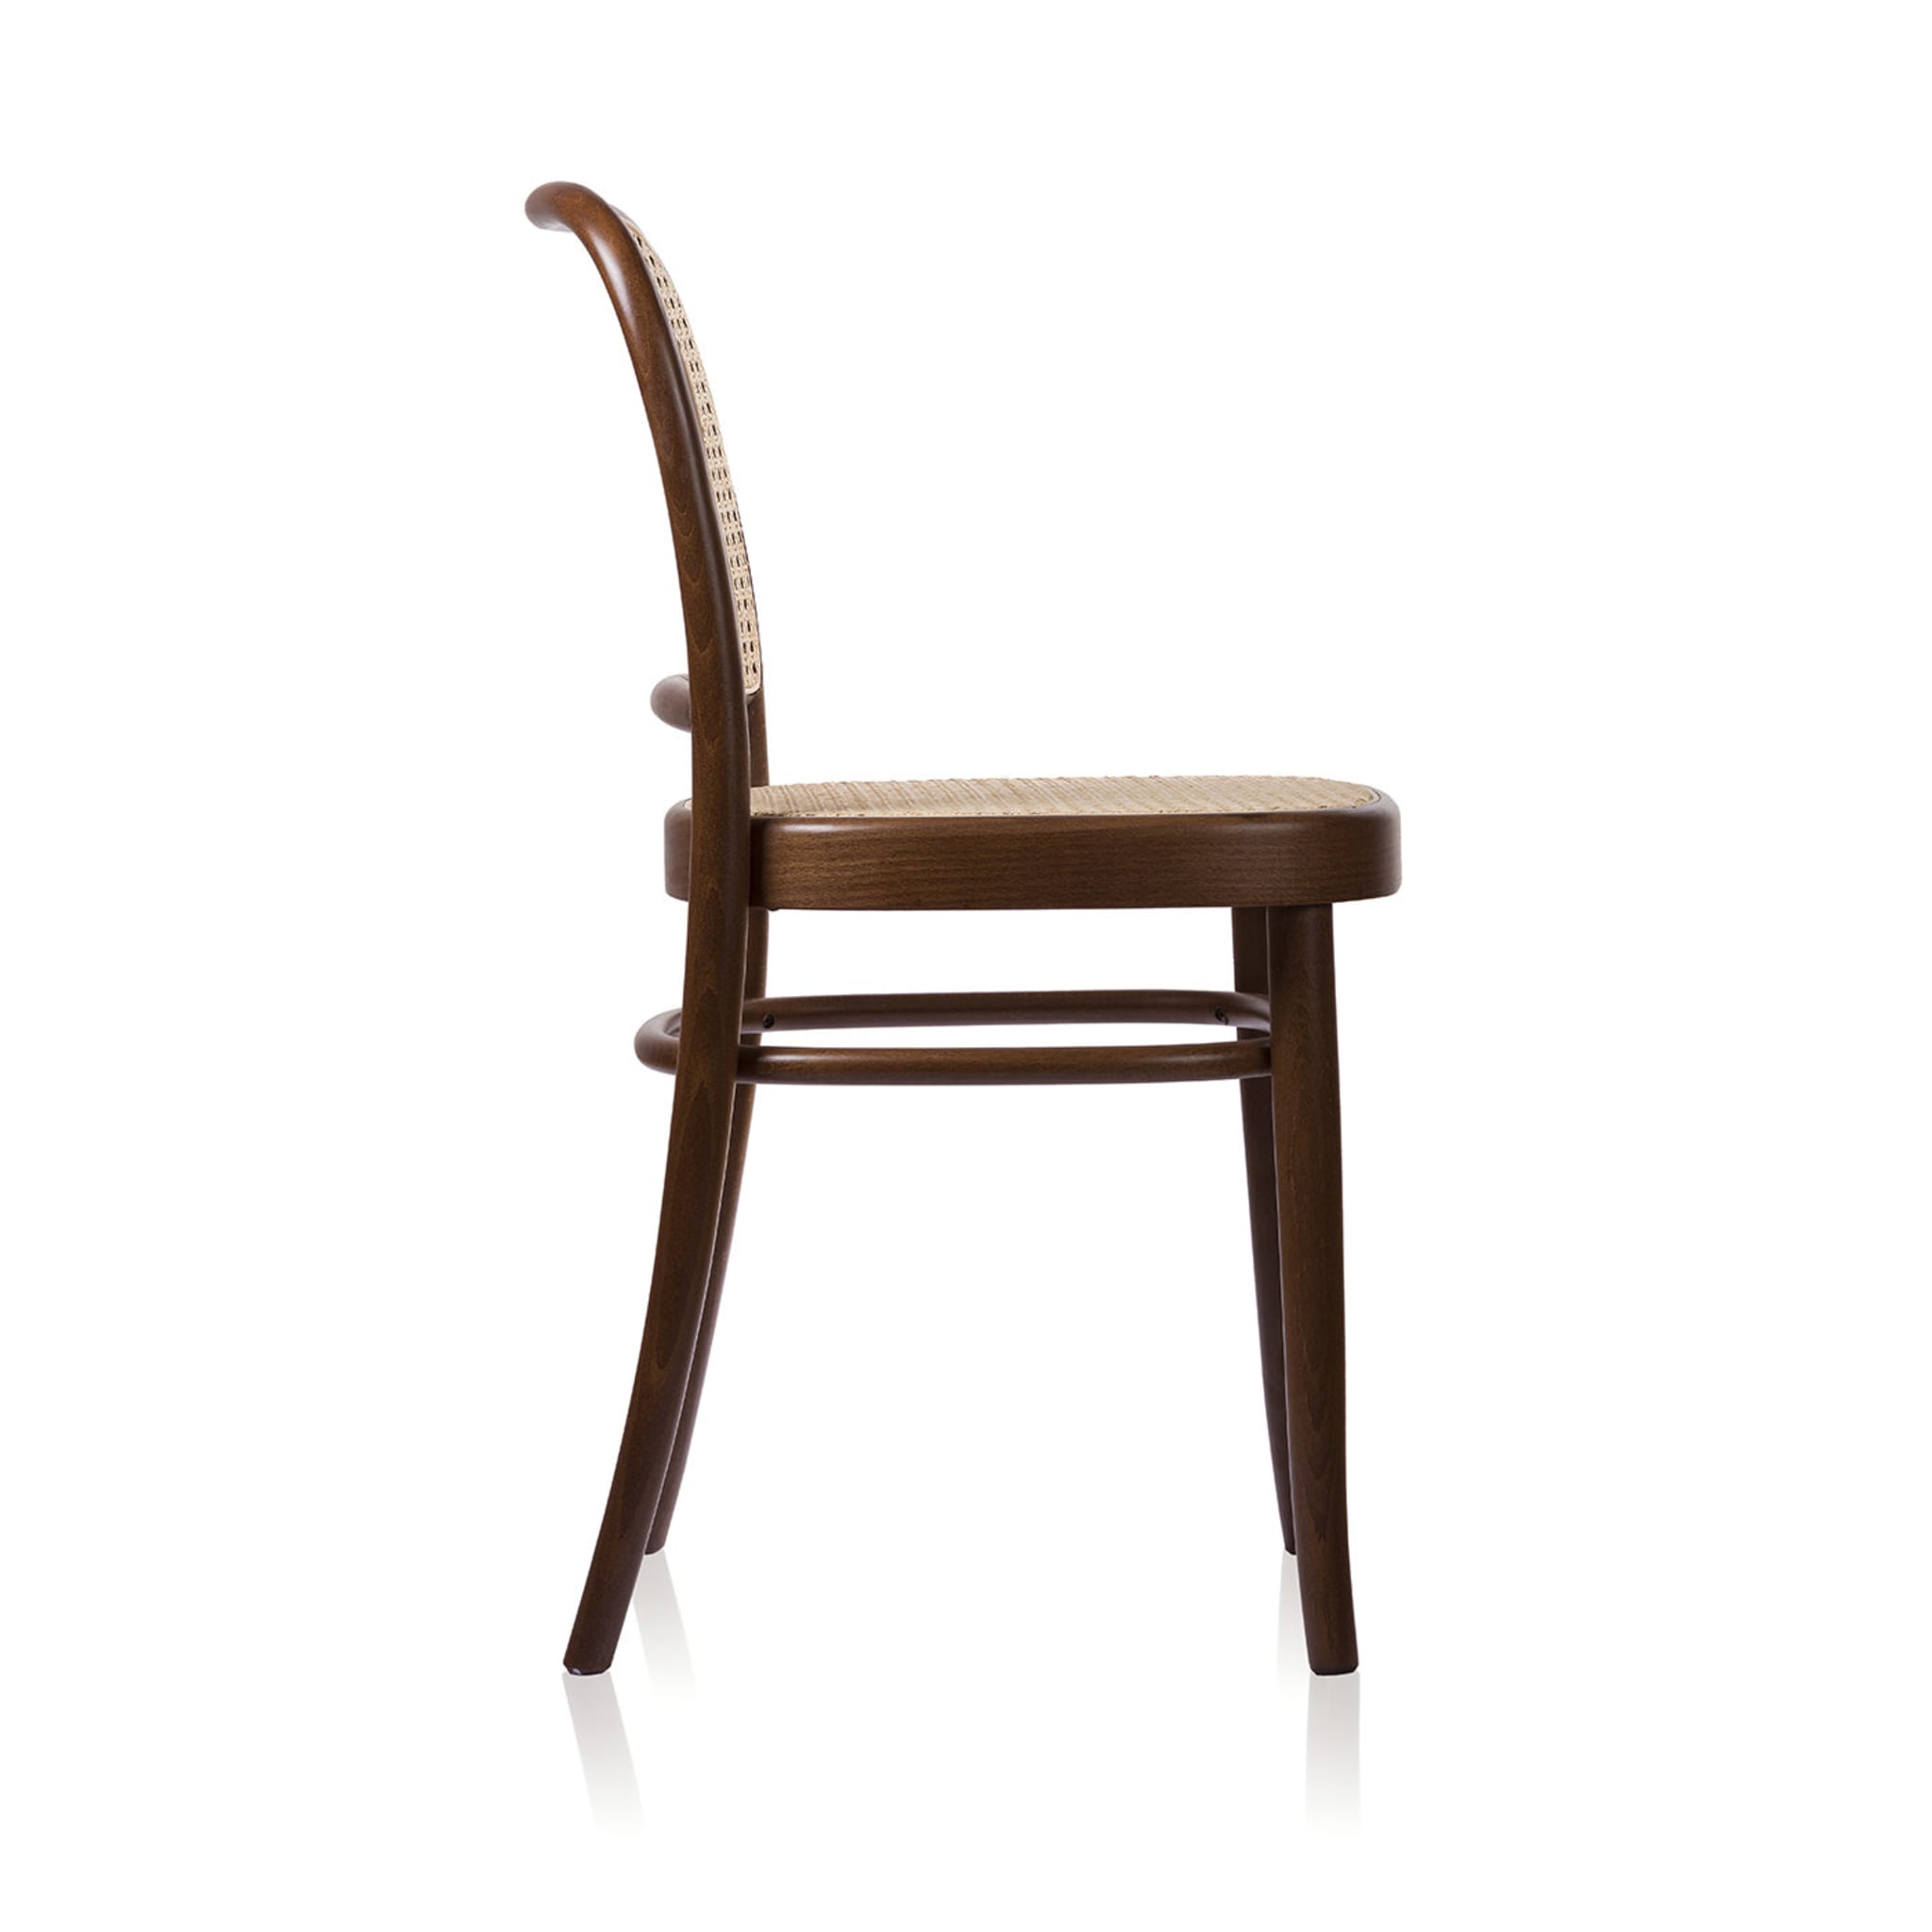 Nr. 811 Brauner Stuhl von Josef Hoffmann - Alternative Ansicht 1